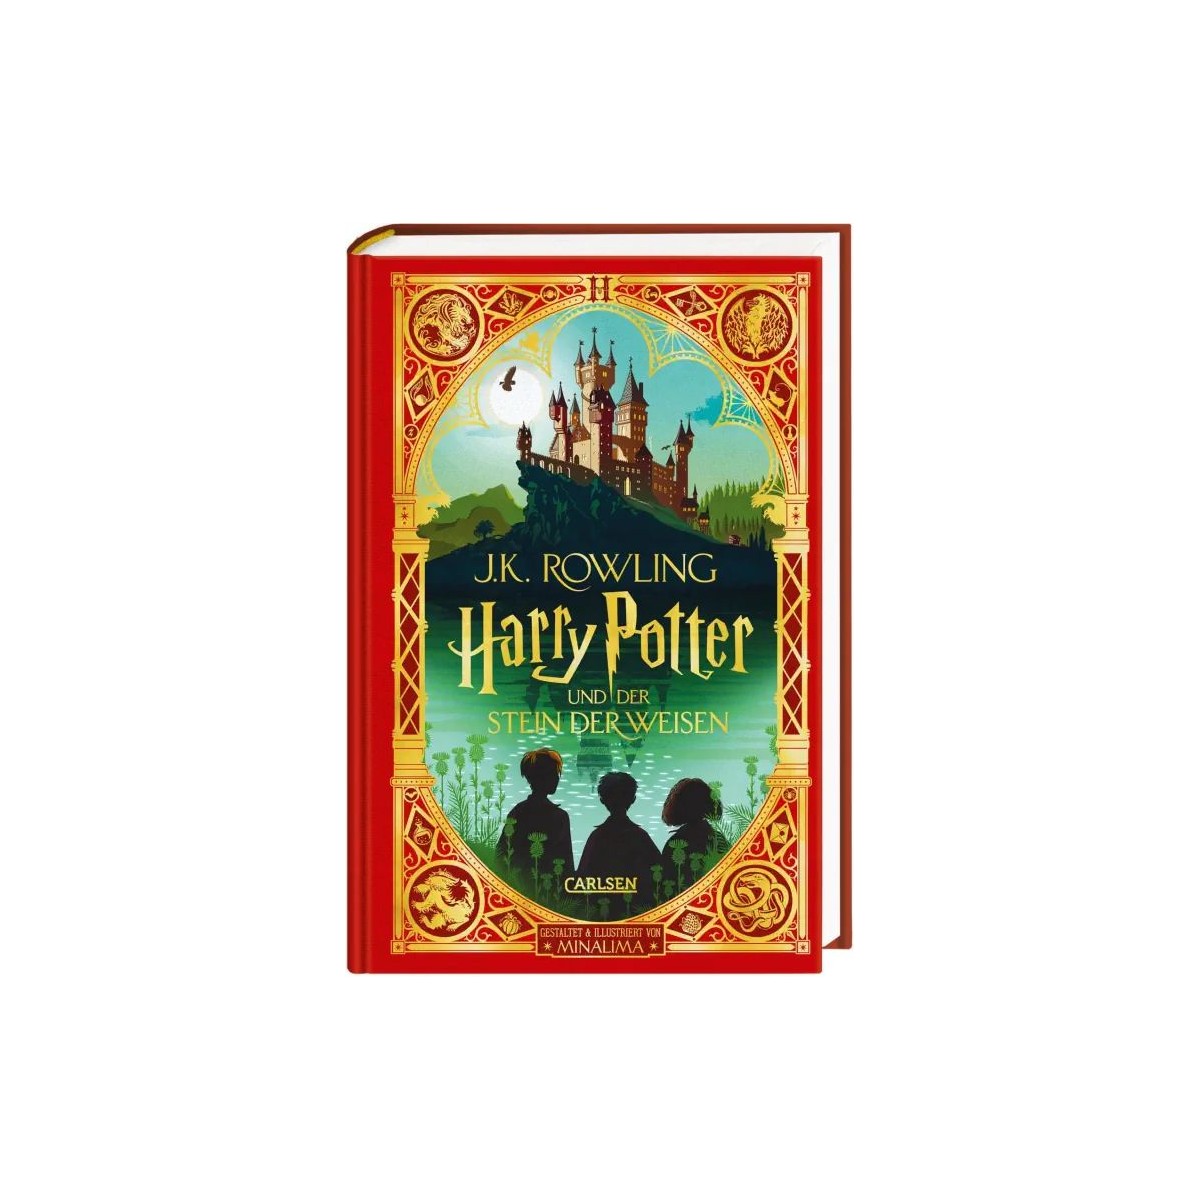 Carlsen Verlag - Harry Potter und der Stein der Weisen: MinaLima-Ausgabe, Harry Potter 1